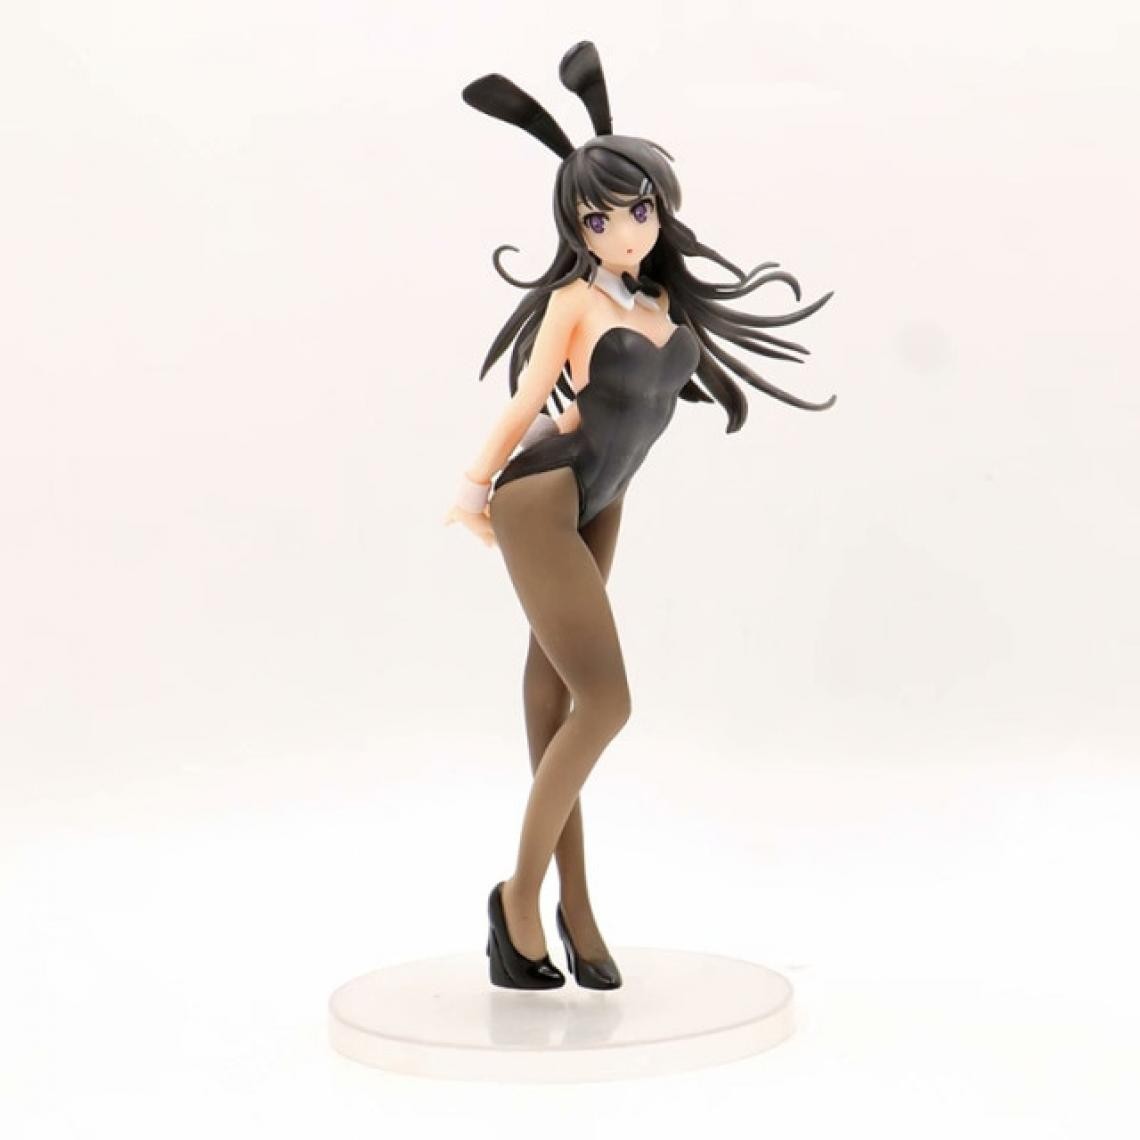 Universal - 24 cm anime hooligan pas de rêves lapin fille Sakurajima soeur fille sexy anime figurine pvc action image numérique(Coloré) - Mangas